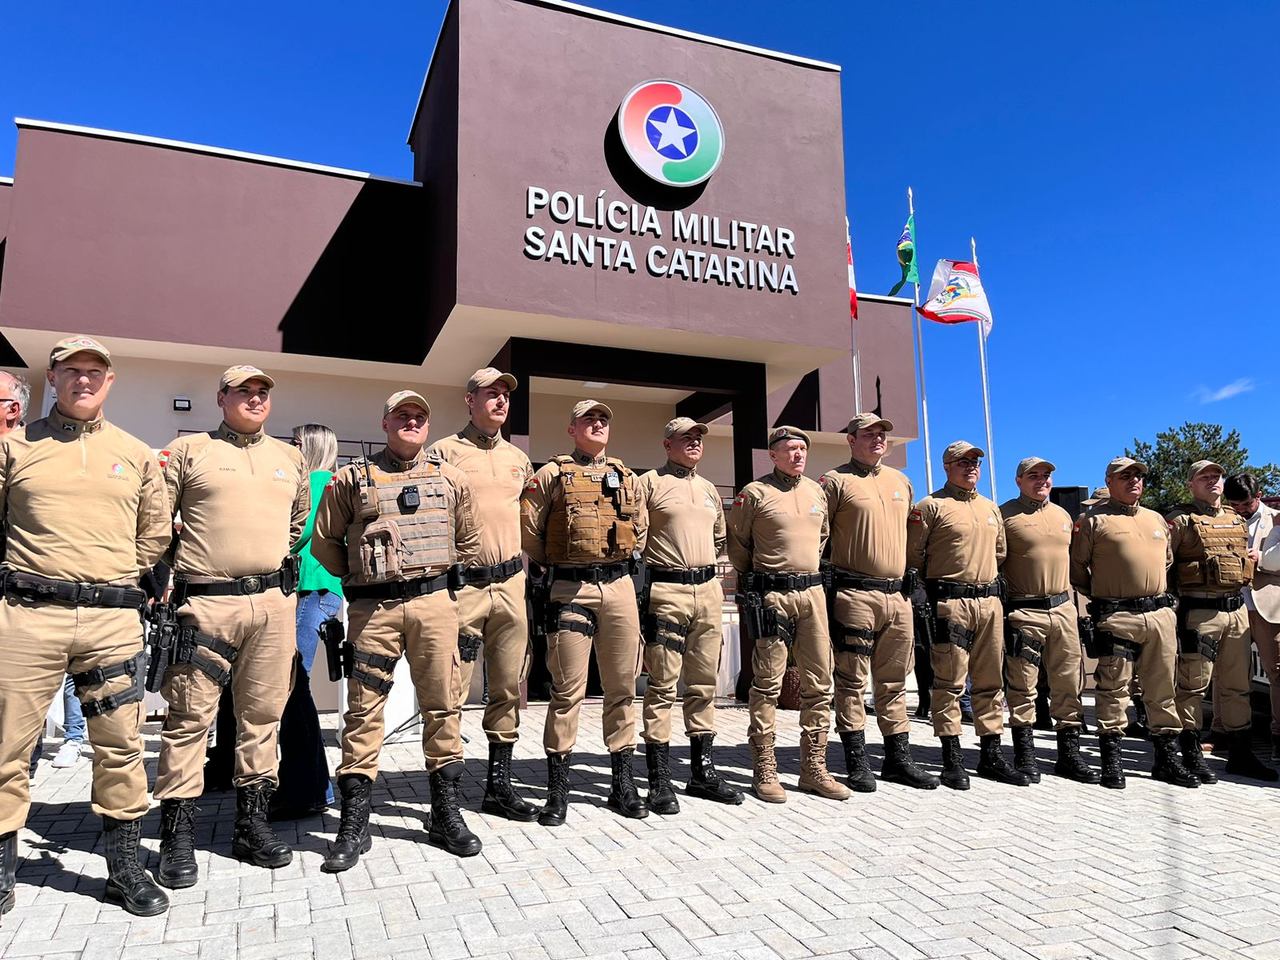 Polícia Militar inaugura novo quartel na Serra Catarinense